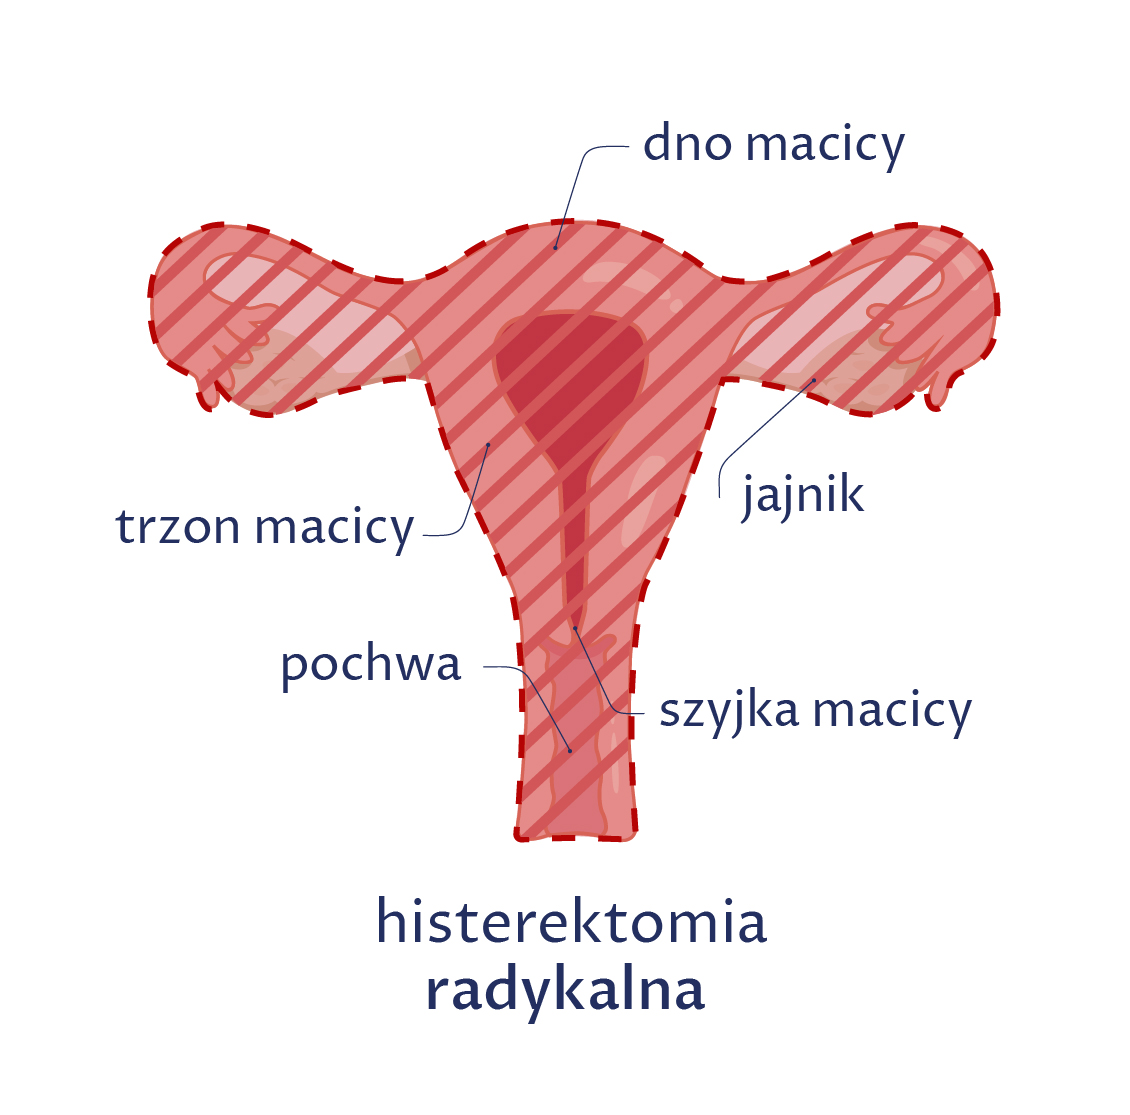 Rysunek ukazuje histerektomię radykalną z usunięciem górnej części pochwy, podczas której wycina się macicę (szyjkę i trzon), jajniki, jajowody, górną część pochwy i przymacicze.